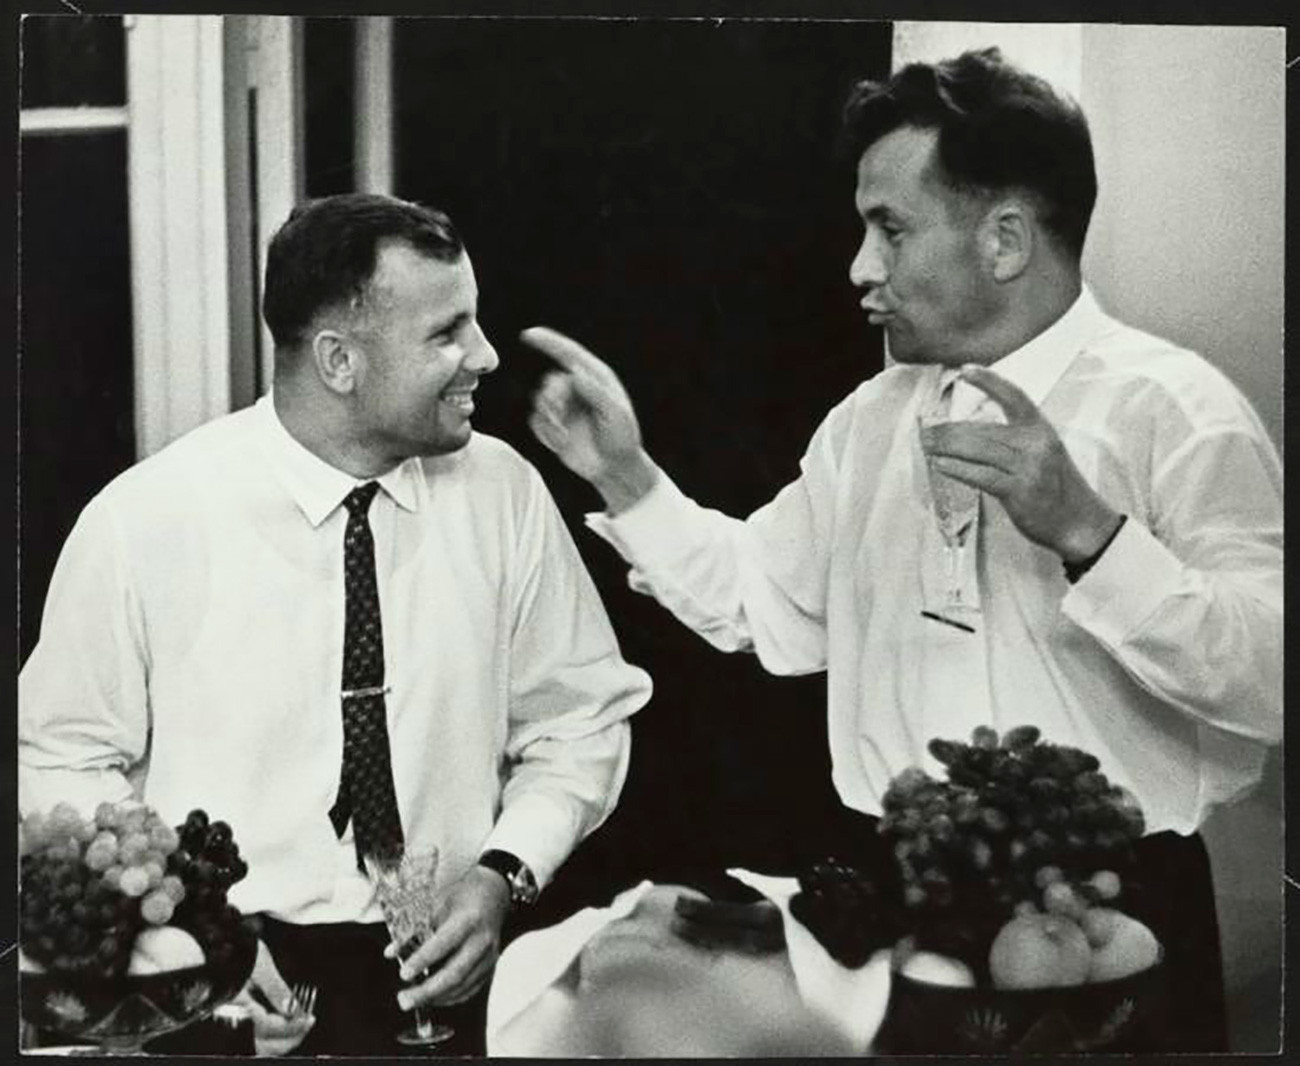 Jurij Gagarin i Pavel Popovič. Popovič je bio četvrti sovjetski kozmonaut u svemiru, šesti čovjek u orbiti i osmi čovjek u svemiru. Smatrali su se jakim kandidatom za prvi let u svemir, ali je, kada je Gagarin izabran za Vostok 1, Popovič služio kao glavni komunikator (CAPCOM) leta. 1962. / 